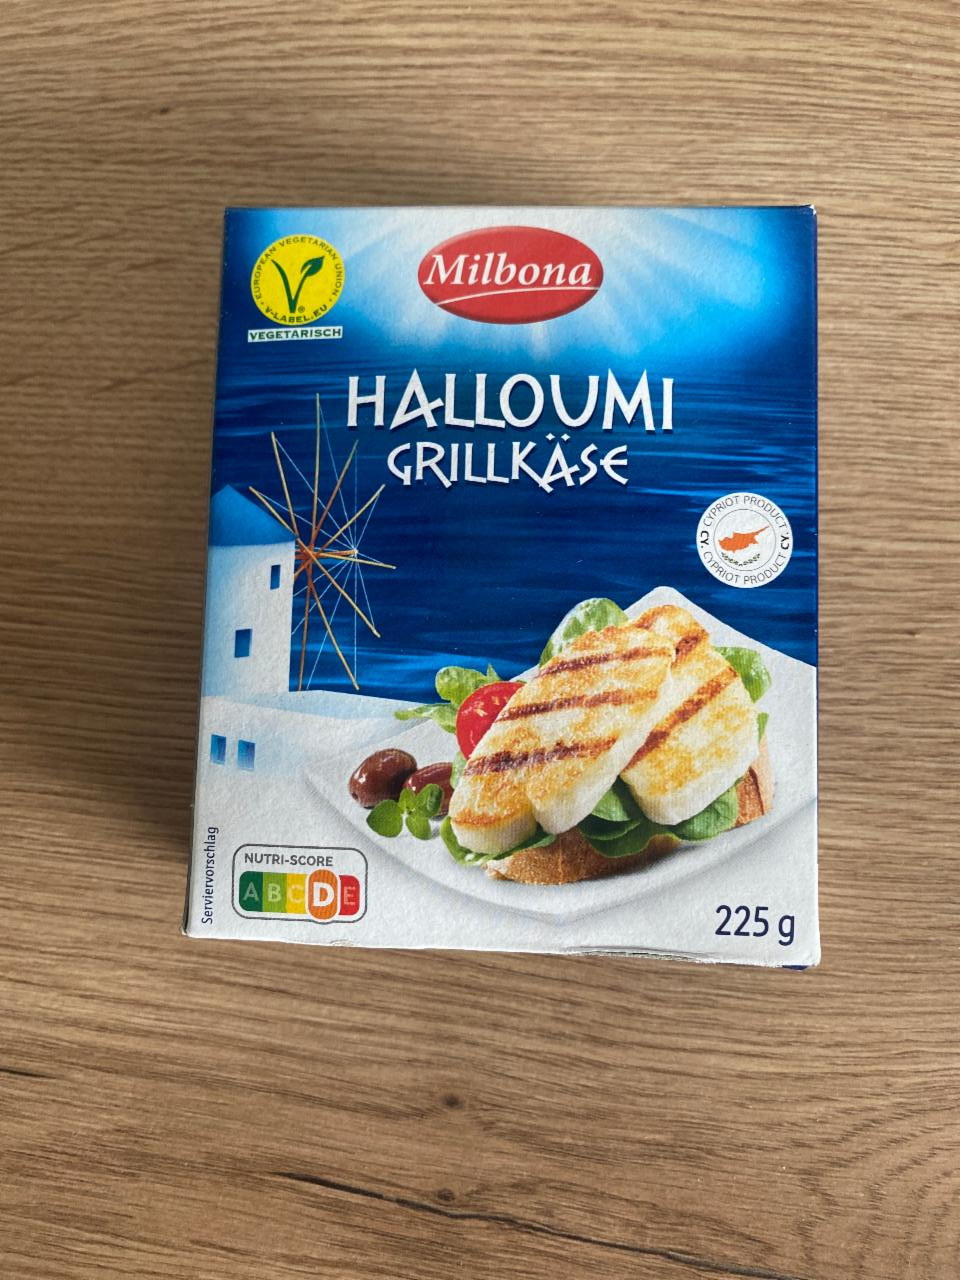 Fotografie - halloumi grillkäse Milbona